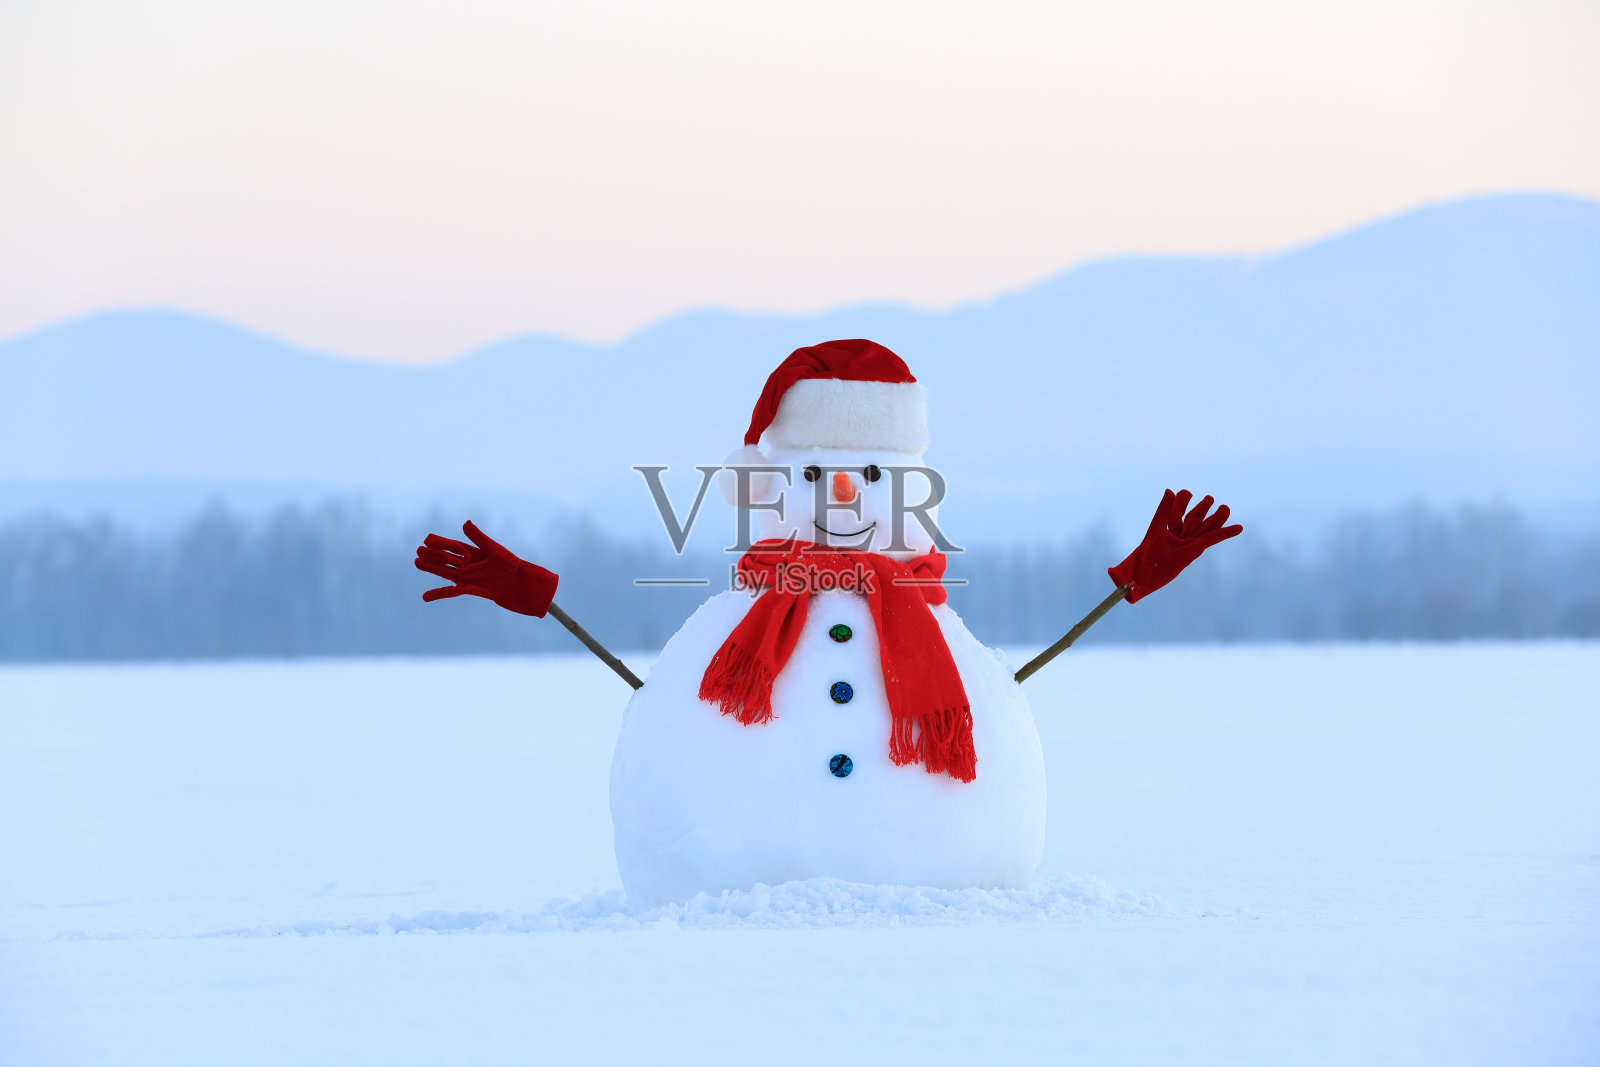 戴着红帽子和围巾的雪人。圣诞节的风景。背景是高山。地面被雪覆盖。寒冷的冬天。照片摄影图片